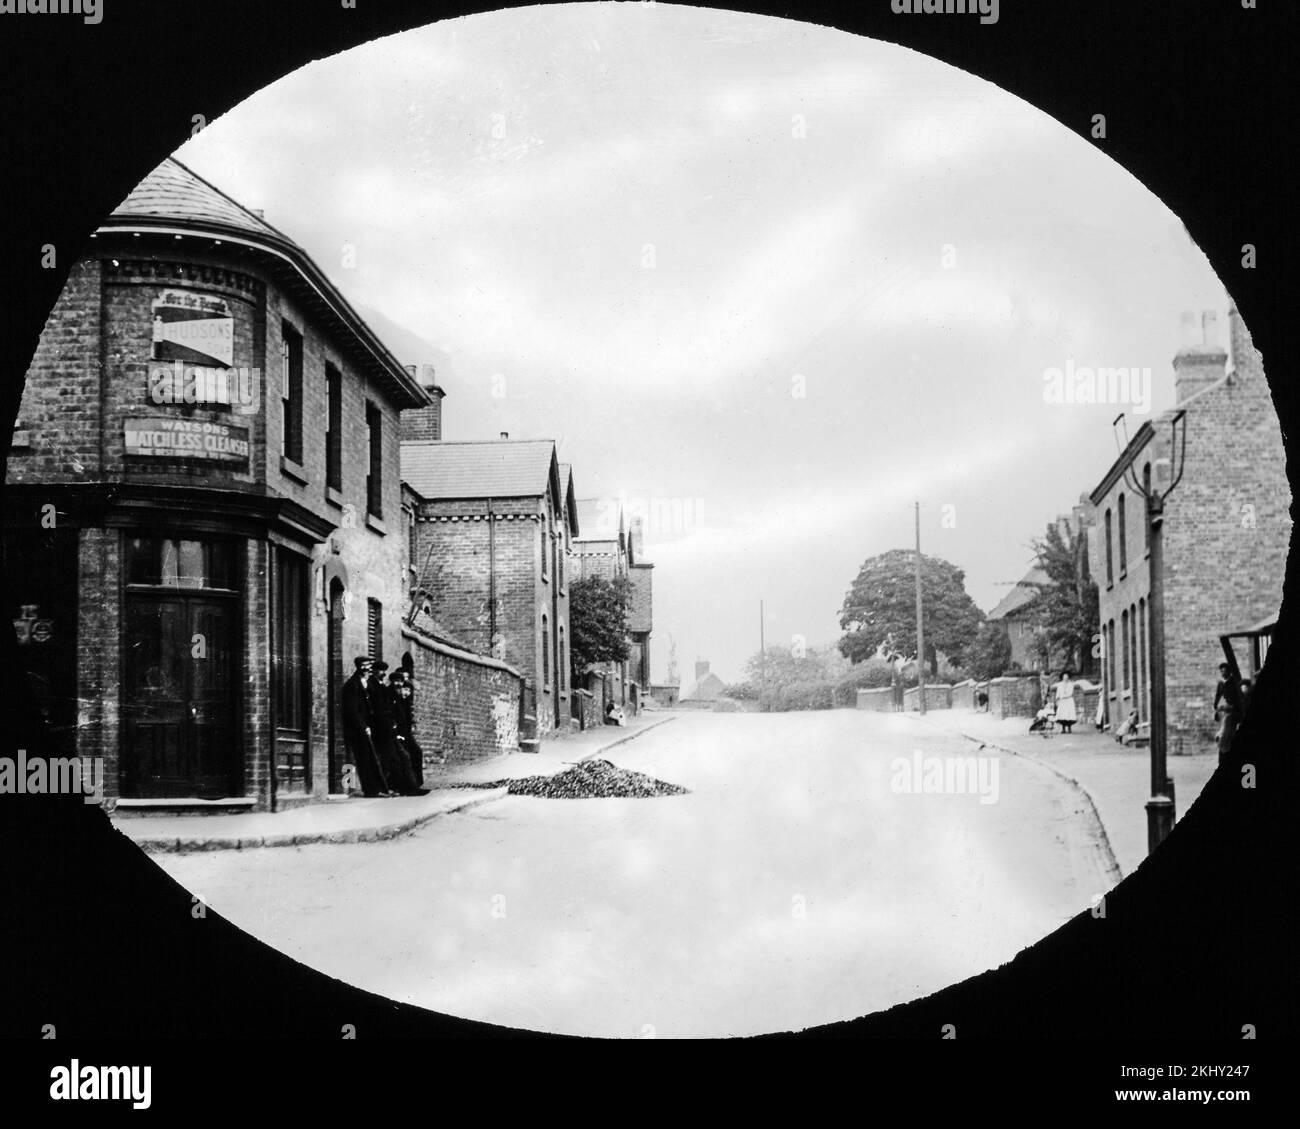 Fotografía en blanco y negro de la época victoriana tardía o de principios de eduardiano que muestra la calle High Street en Loscoe, Derbyshire, Inglaterra. La foto muestra una tienda de la esquina. Foto de stock